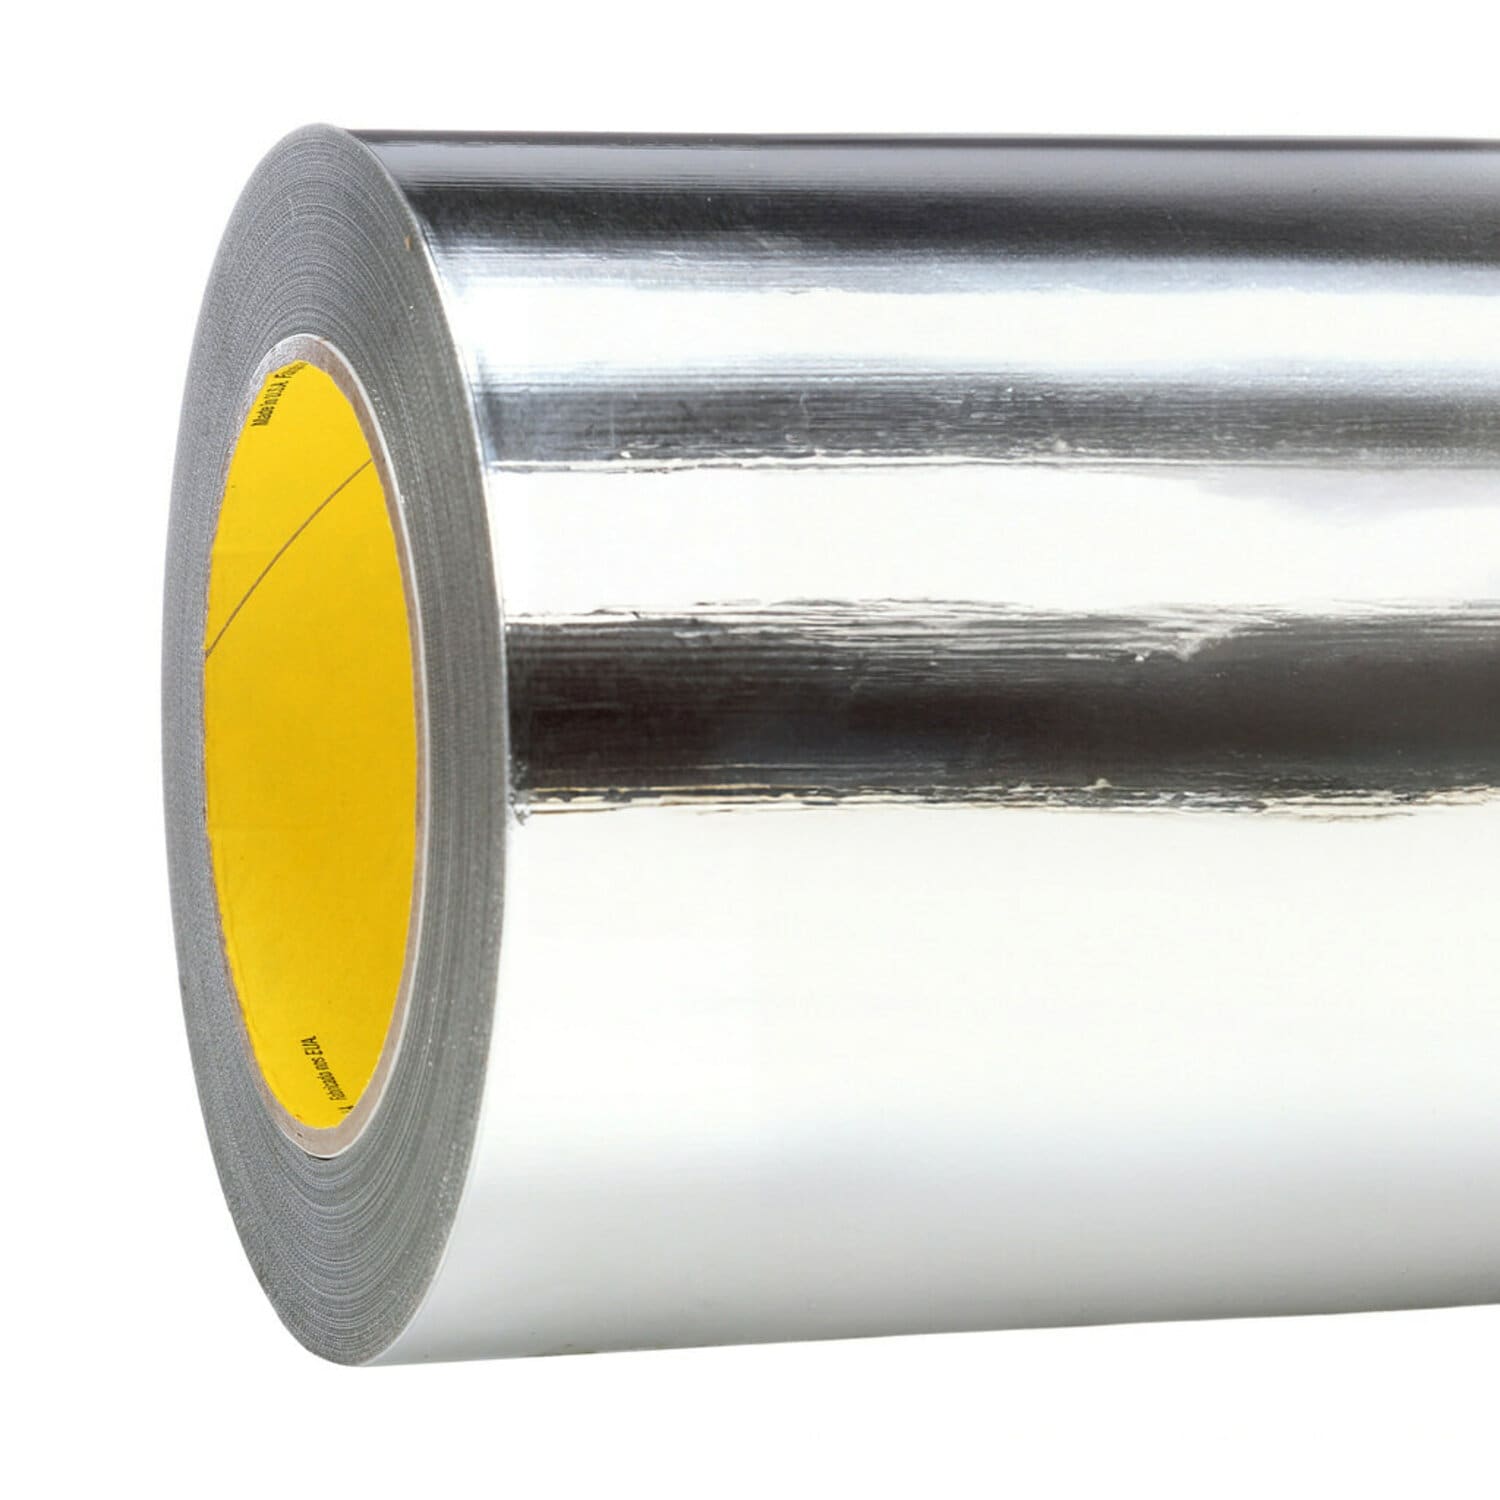 7010302892 - 3M Aluminum Foil Tape 427, Silver, 41 in x 60 yd, 4.6 mil, 1 roll per
case